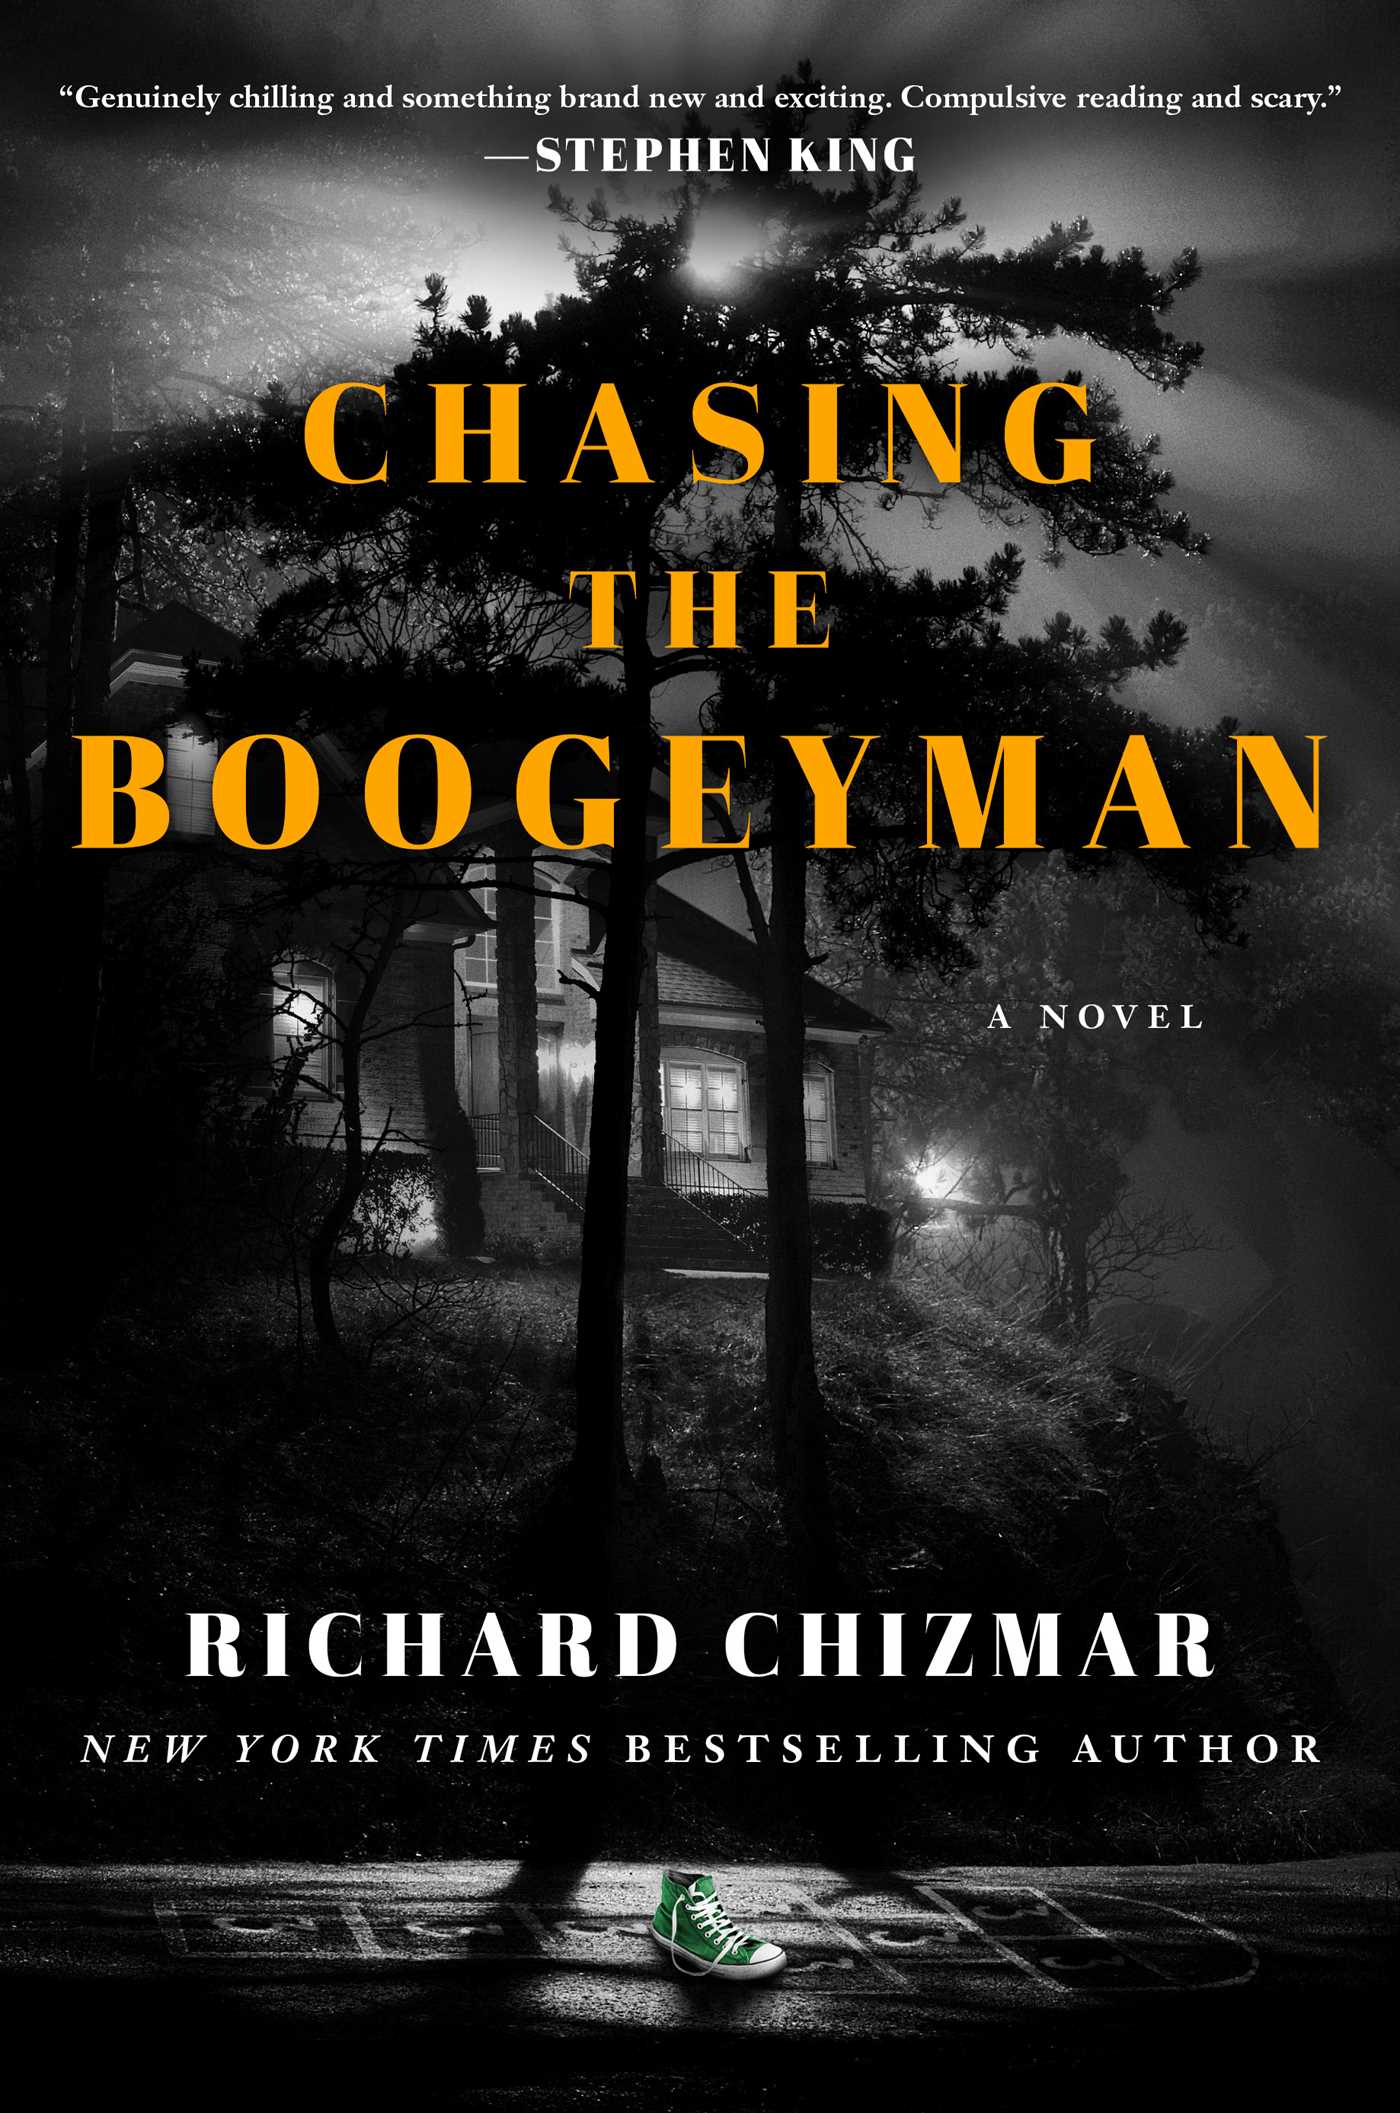 [EPUB] The Boogeyman #1 Chasing the Boogeyman by Richard Chizmar